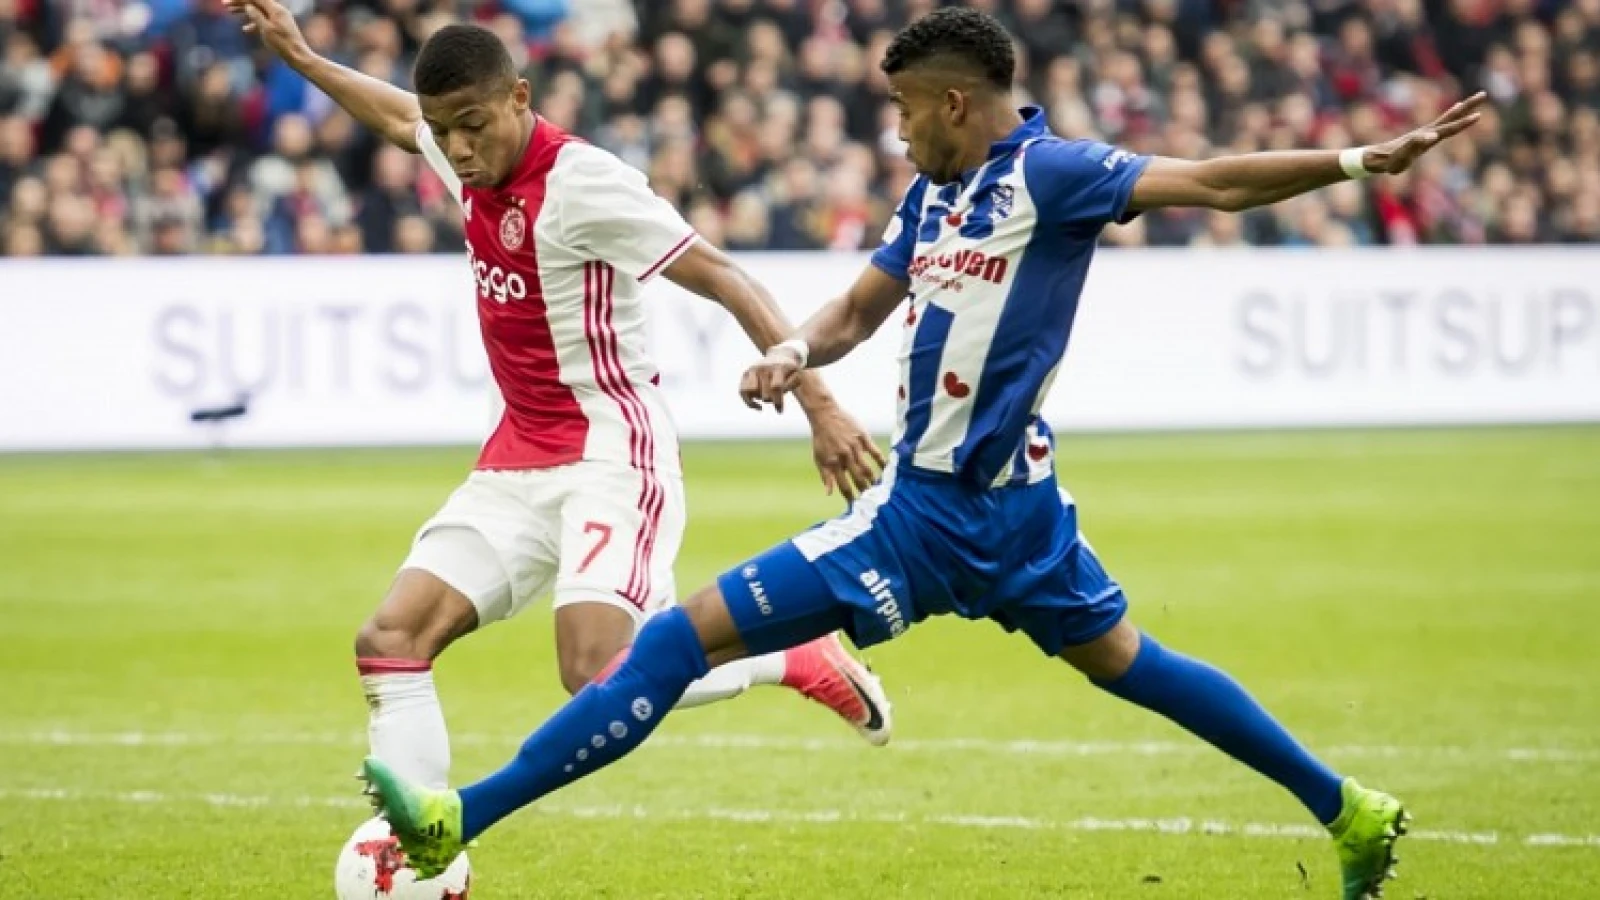 St. Juste 'reageert' kort op mogelijke transfer naar Feyenoord